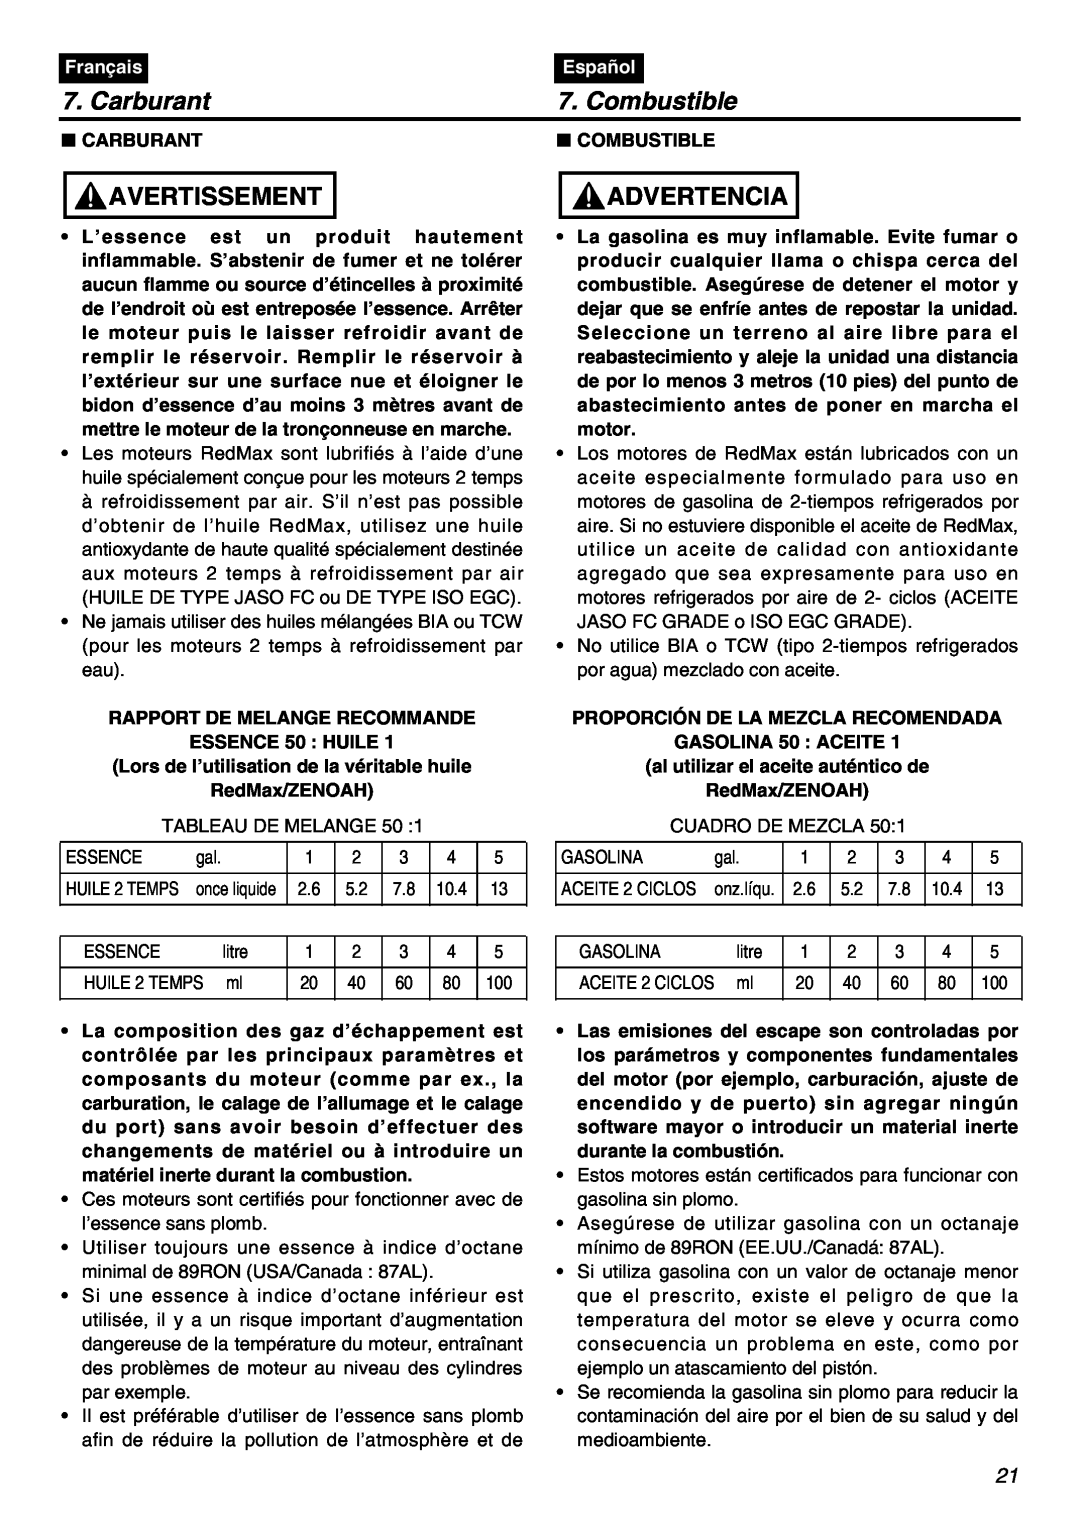 Zenoah HBZ2601-CA manual Carburant, Combustible, Avertissement, Advertencia, Français, Español 